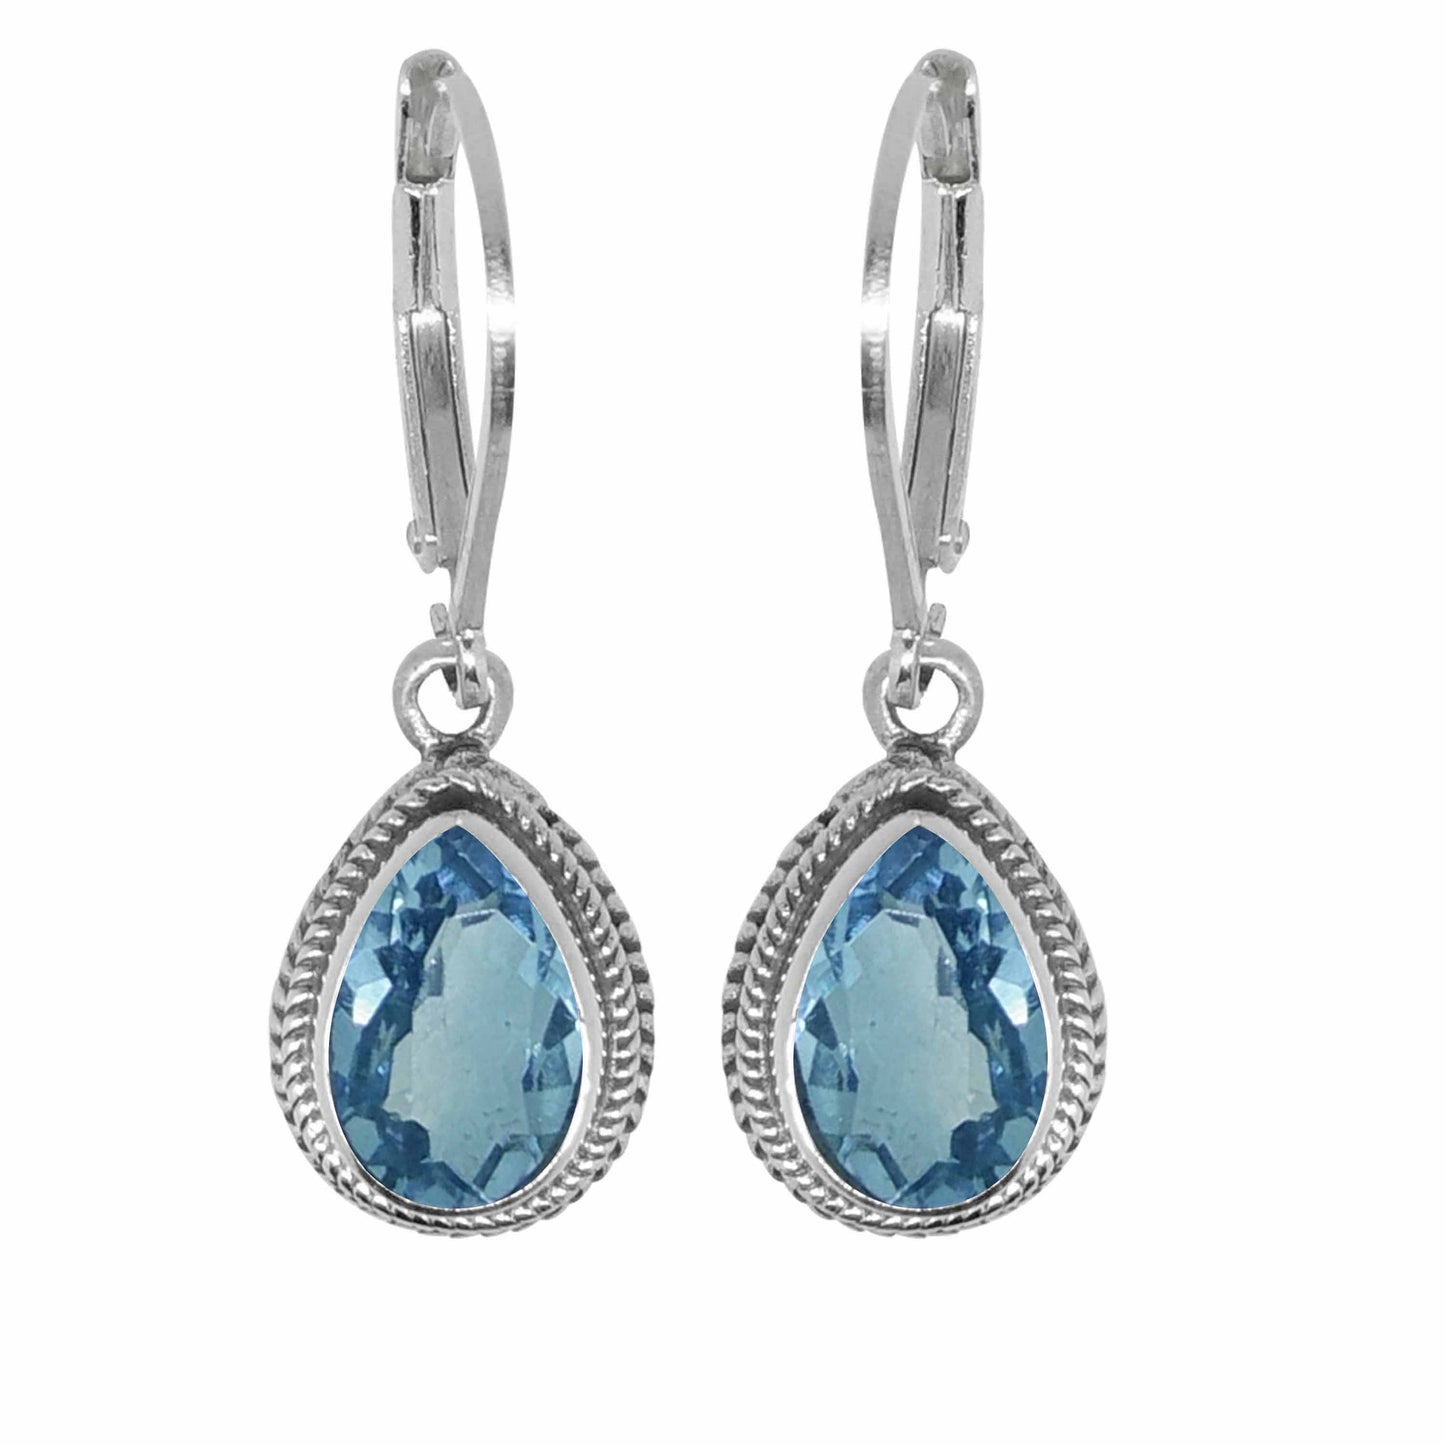 Earring Gemstones - 82314